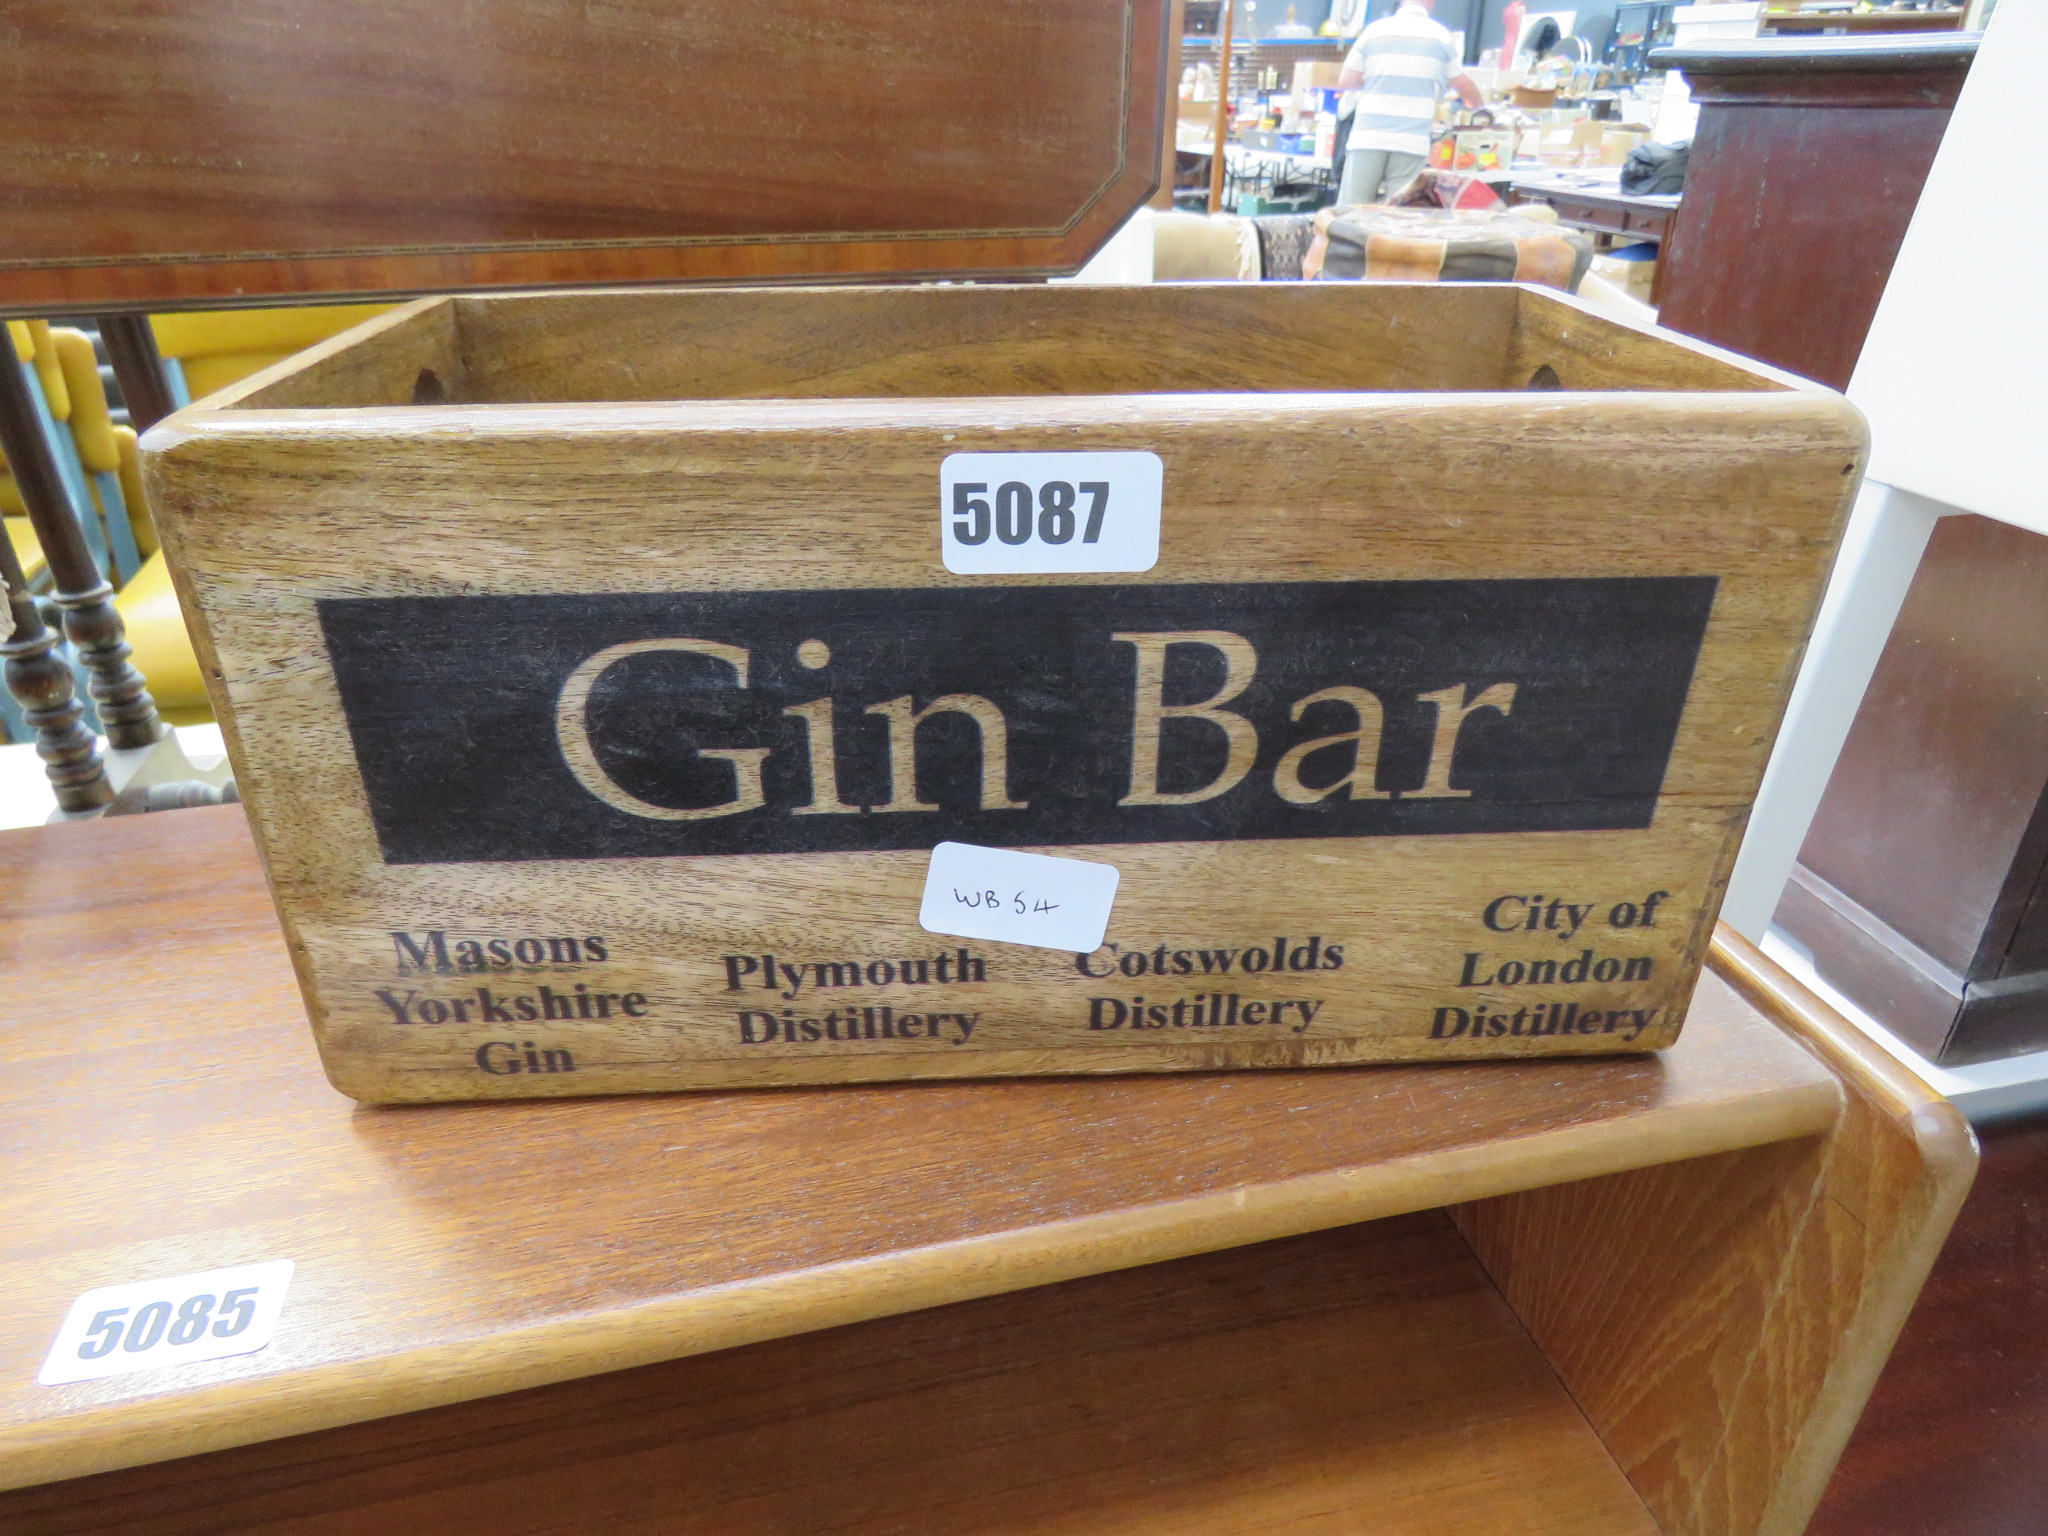 Gin Bar reproduction box